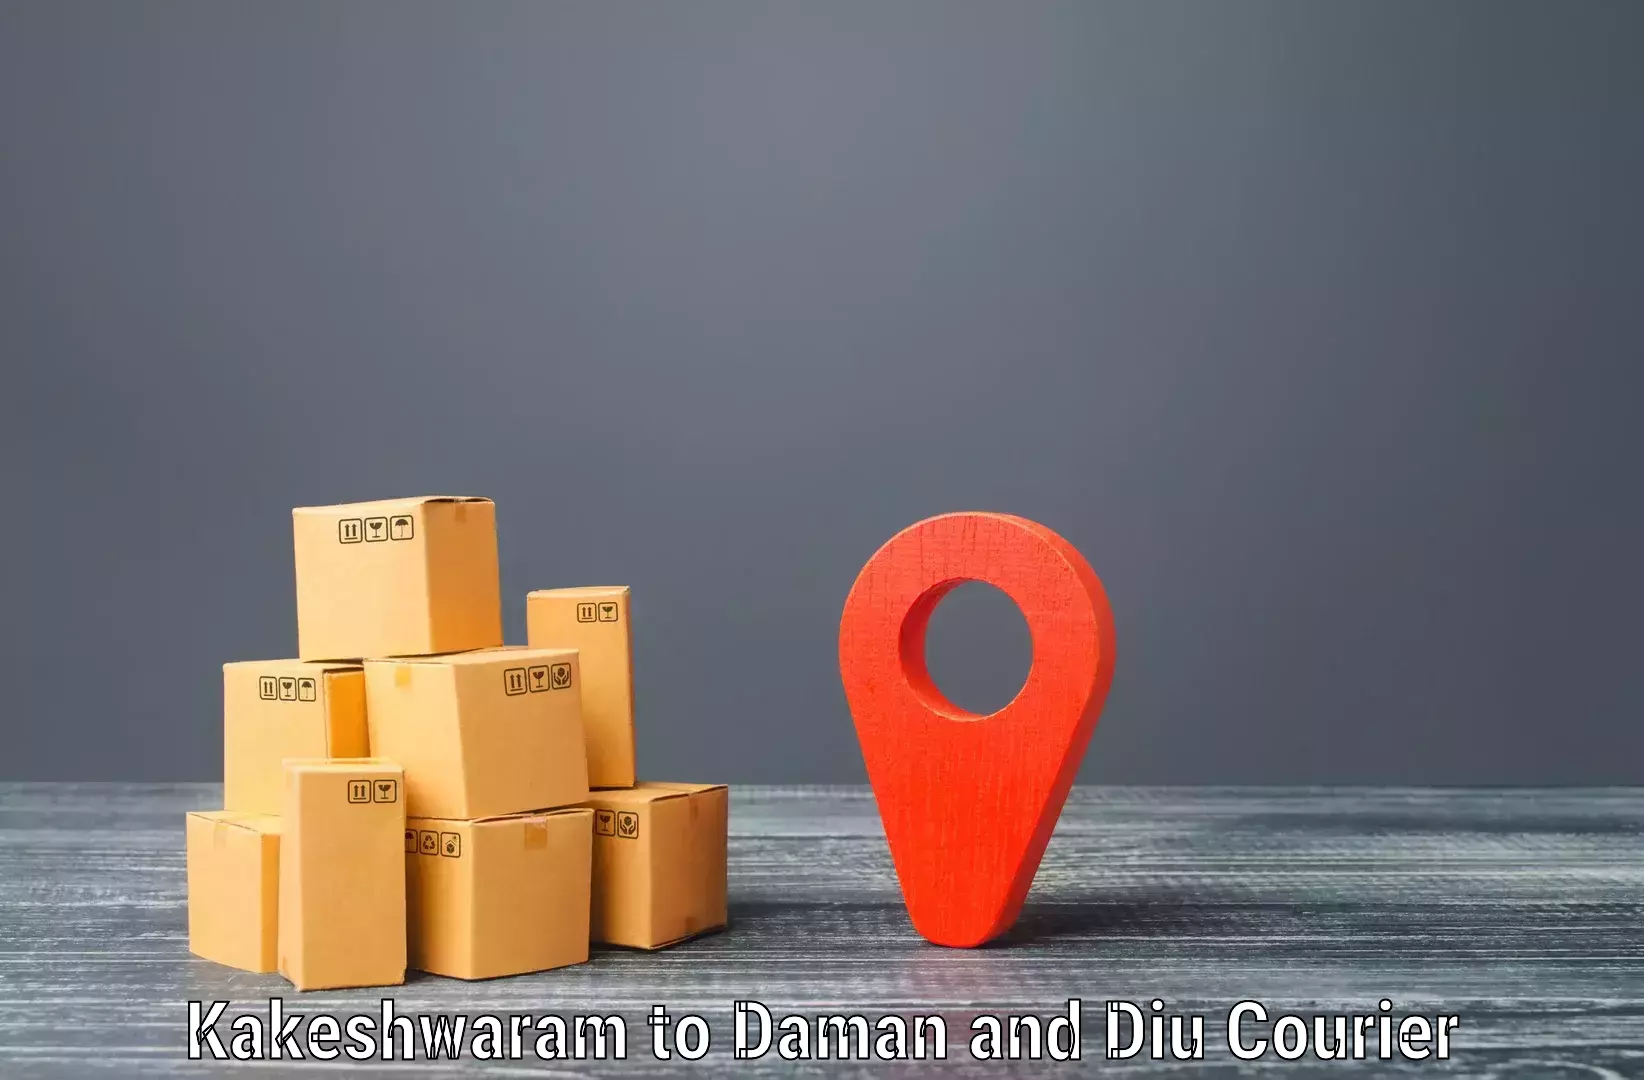 High-priority parcel service Kakeshwaram to Daman and Diu